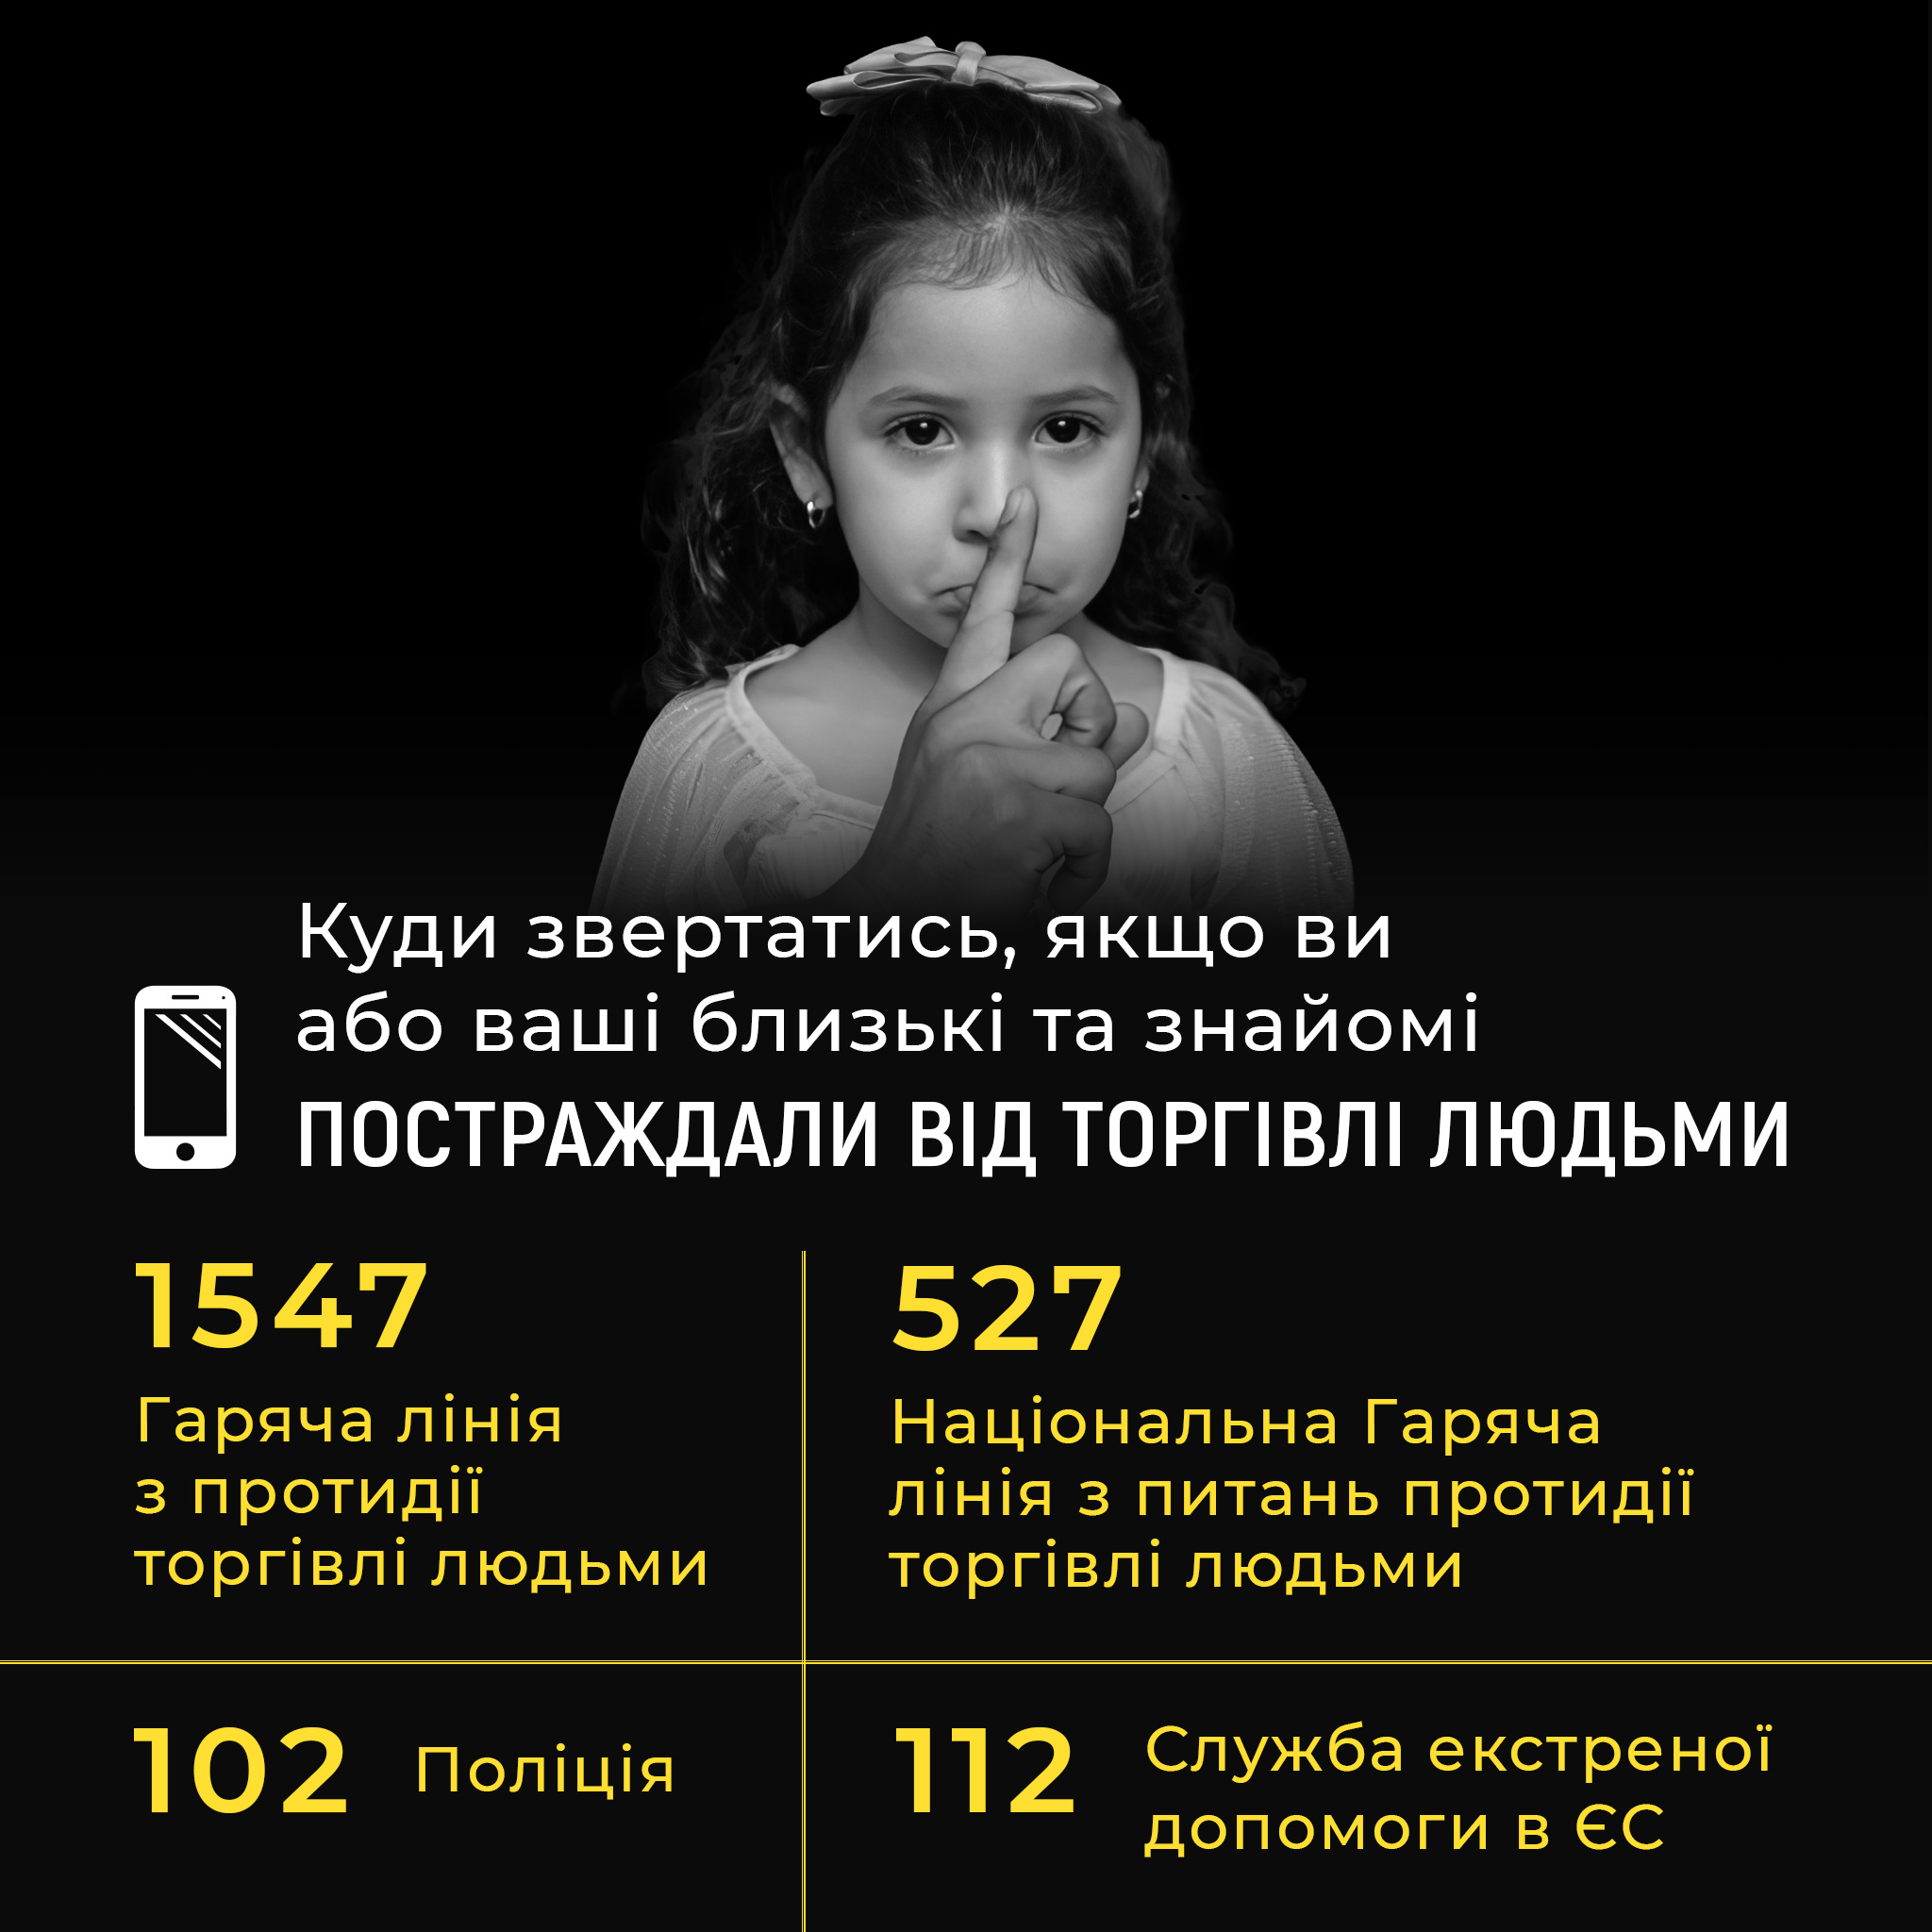 До Європейського дня протидії торгівлі людьми стартує інформаційна кампанія “Придивись”